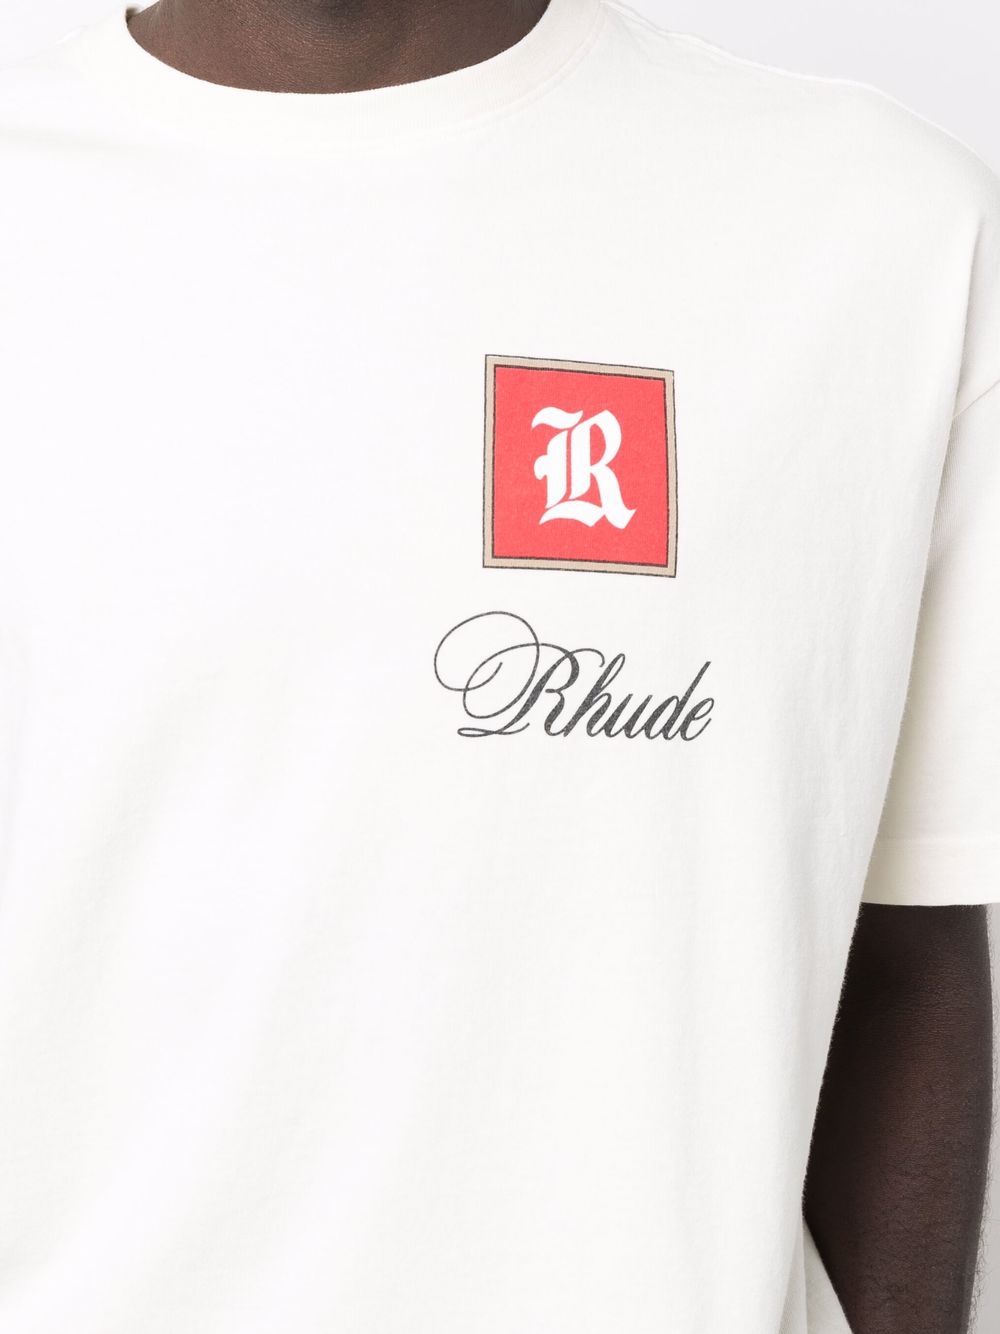 фото Rhude футболка с логотипом